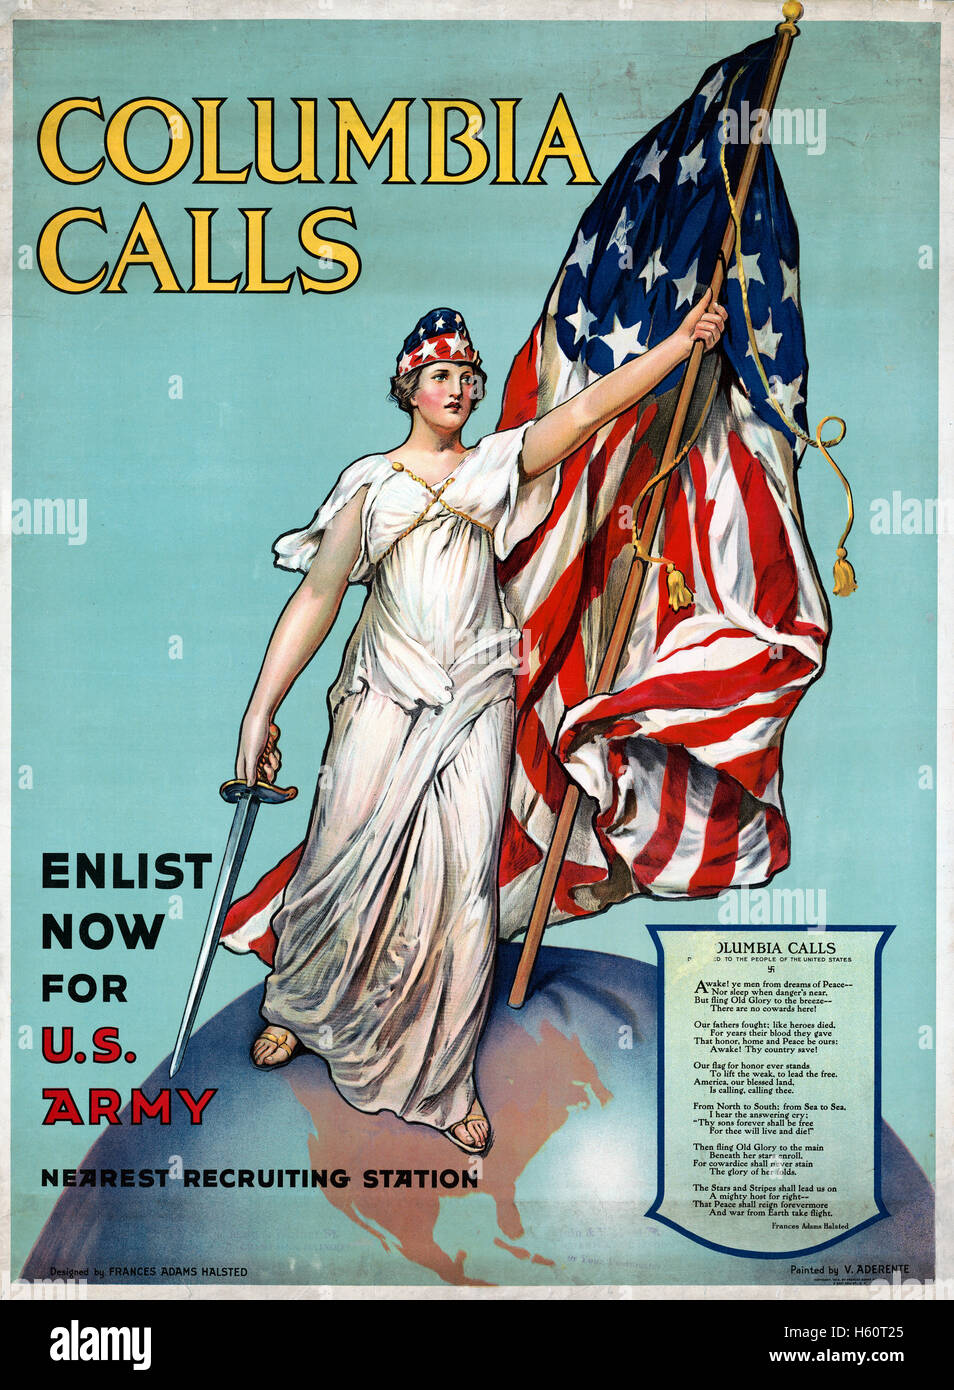 « Columbia appelle, inscrivez-vous dès maintenant pour les États-Unis Army », États-Unis Affiche de recrutement de l'armée pendant la première Guerre mondiale, conçue par Frances Adams Halsted à partir d'une peinture de Vincent Aderente, 1916 Banque D'Images